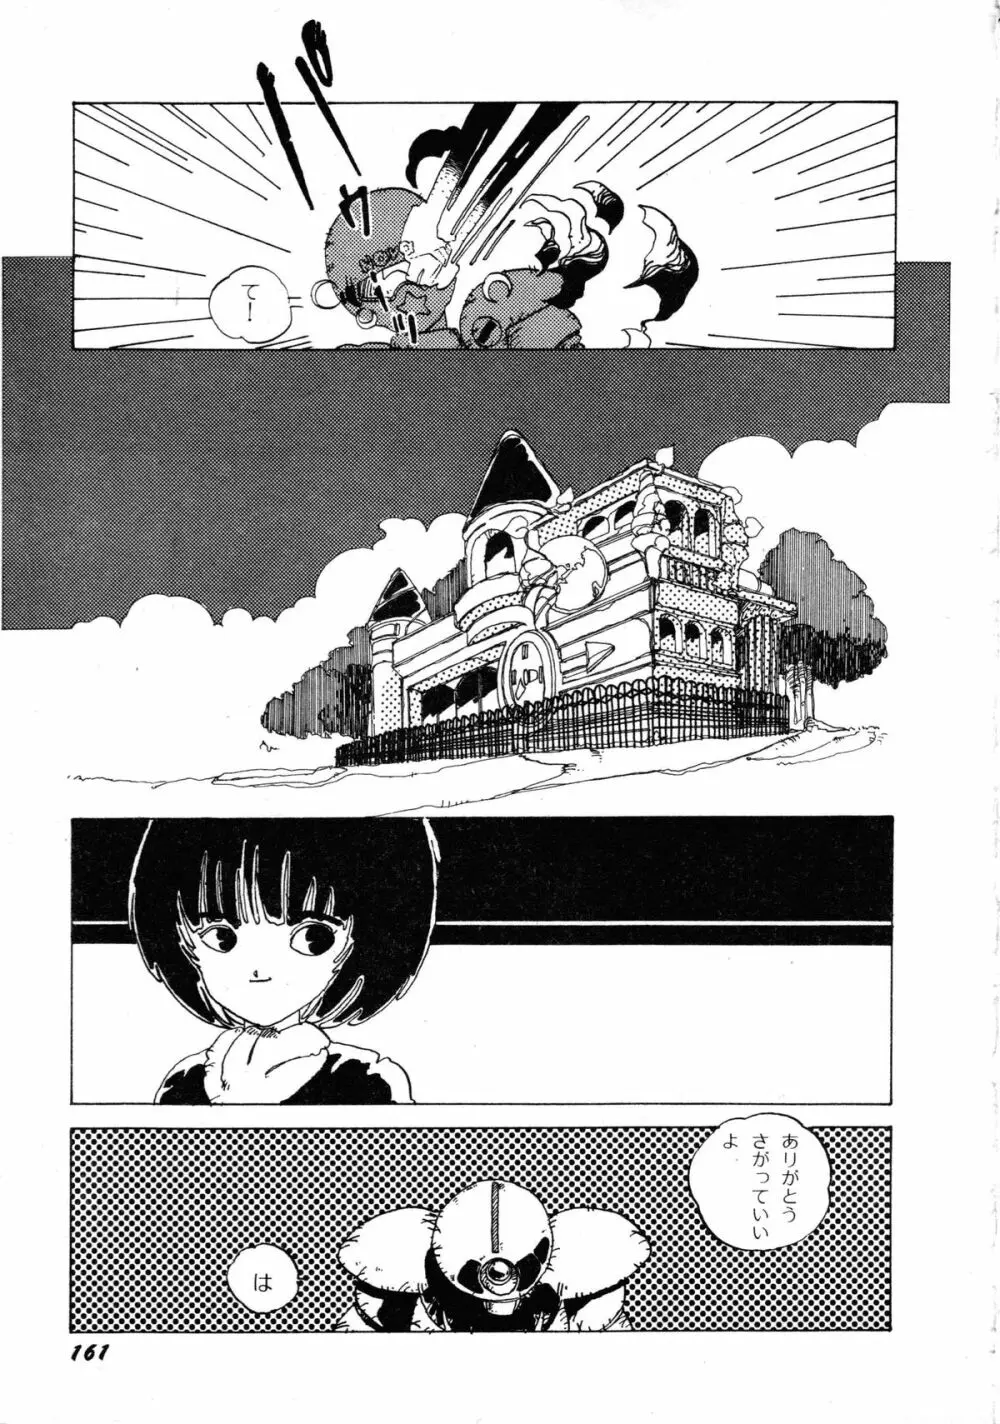 ロボット&美少女傑作選 レモン・ピープル1982-1986 165ページ